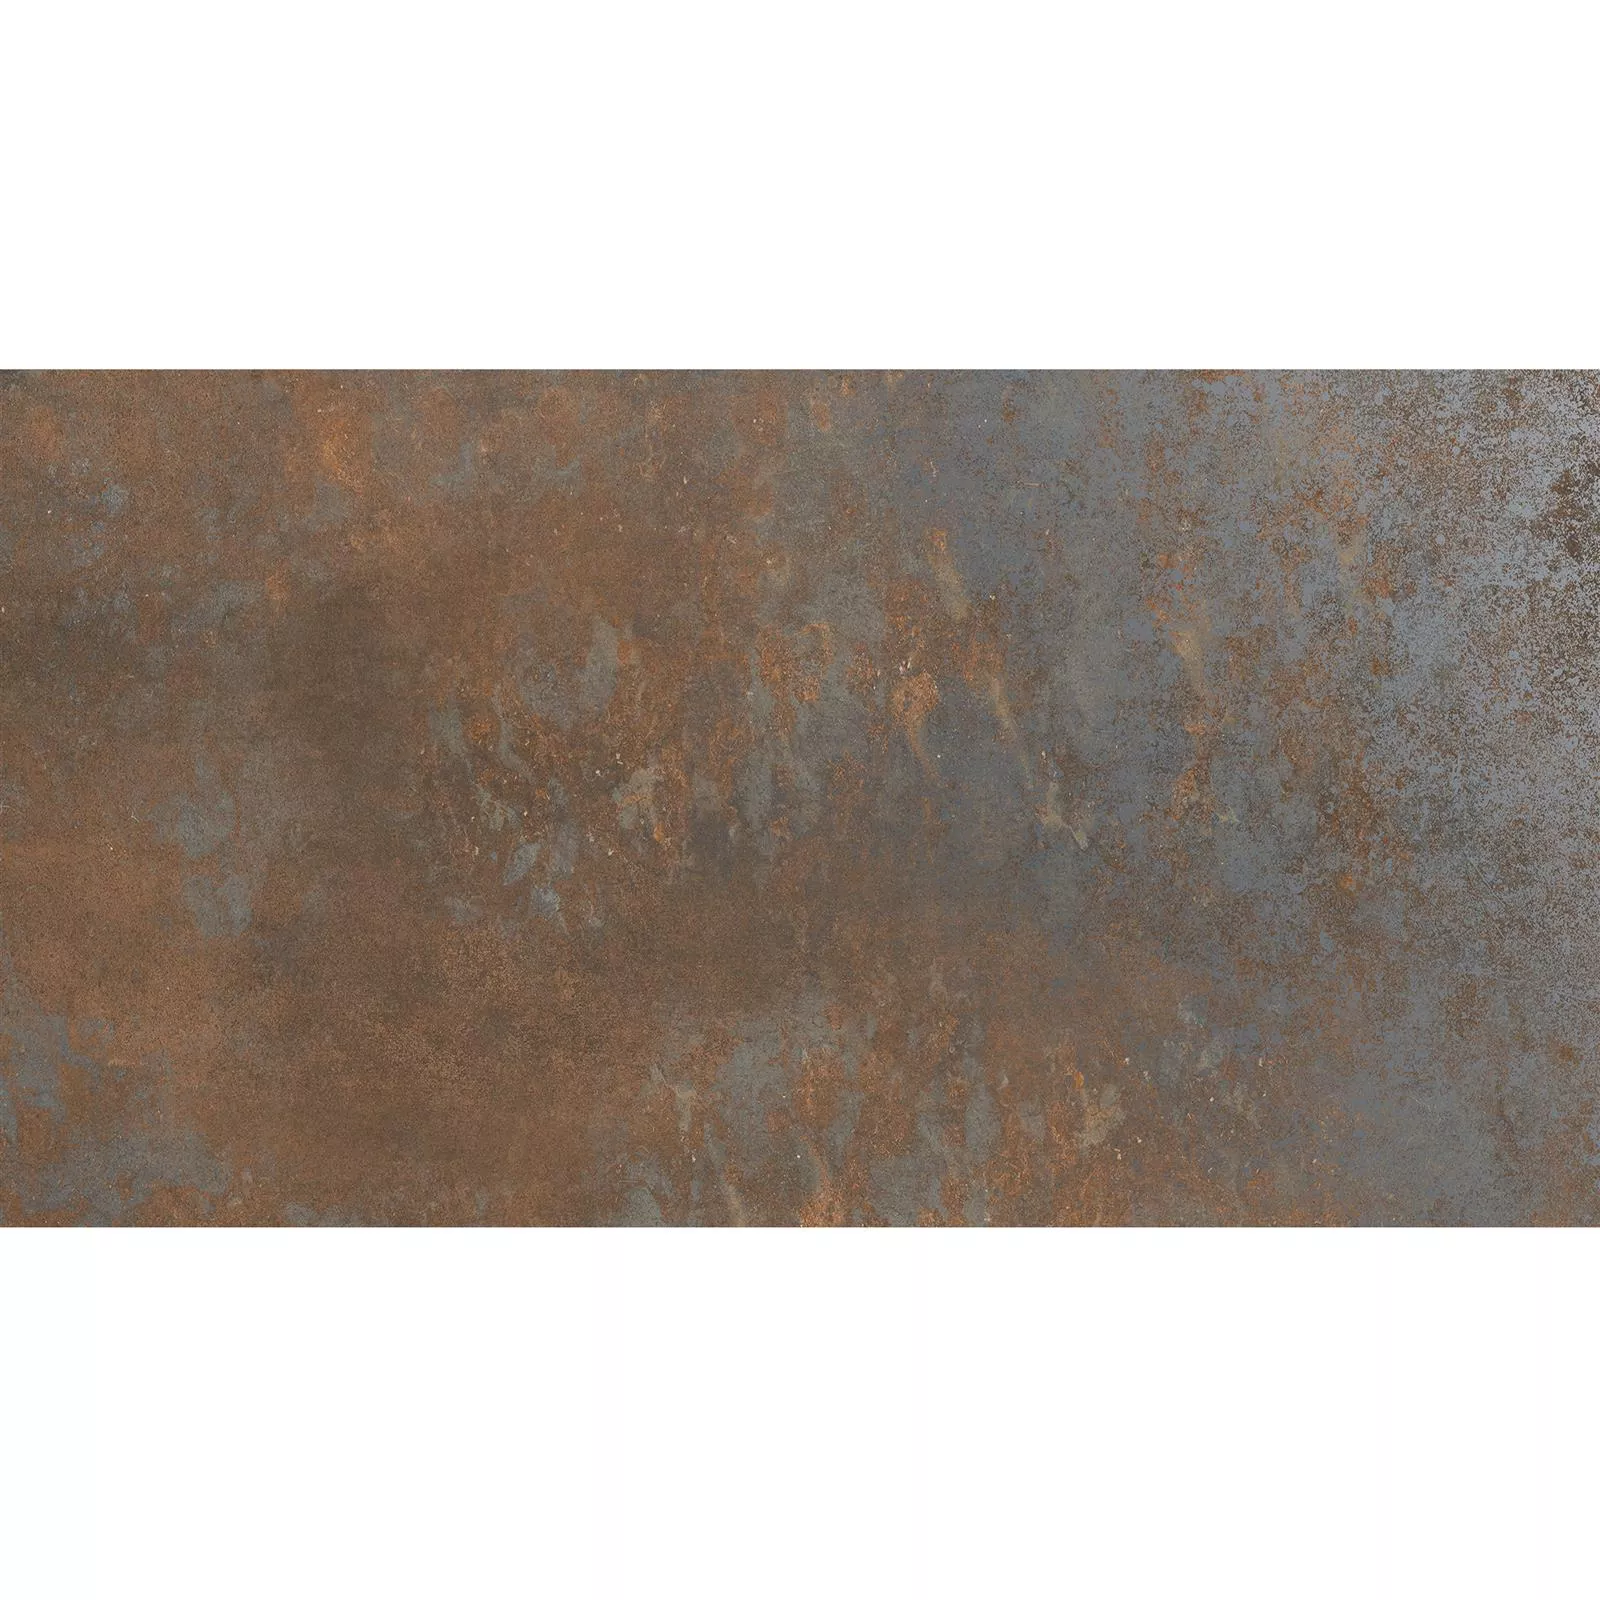 Gulvfliser Sierra Metall Utseende Rust R10/B 30x60cm